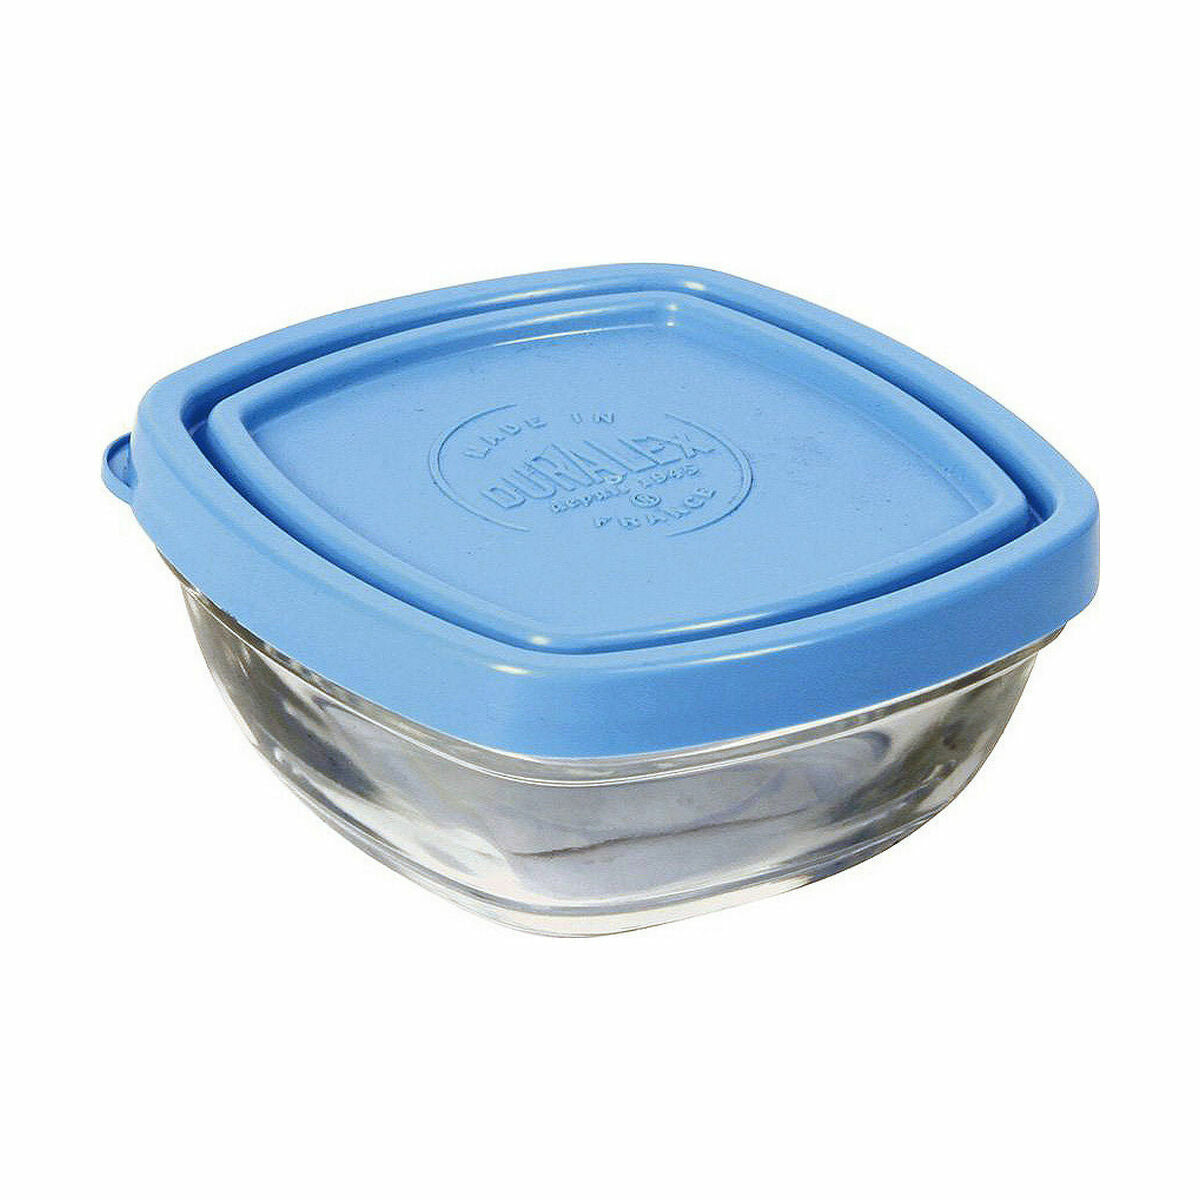 Hermetische Lunchtrommel Duralex Freshbox Blauw Vierkant (150 ml) (9 x 9 x 4 cm)